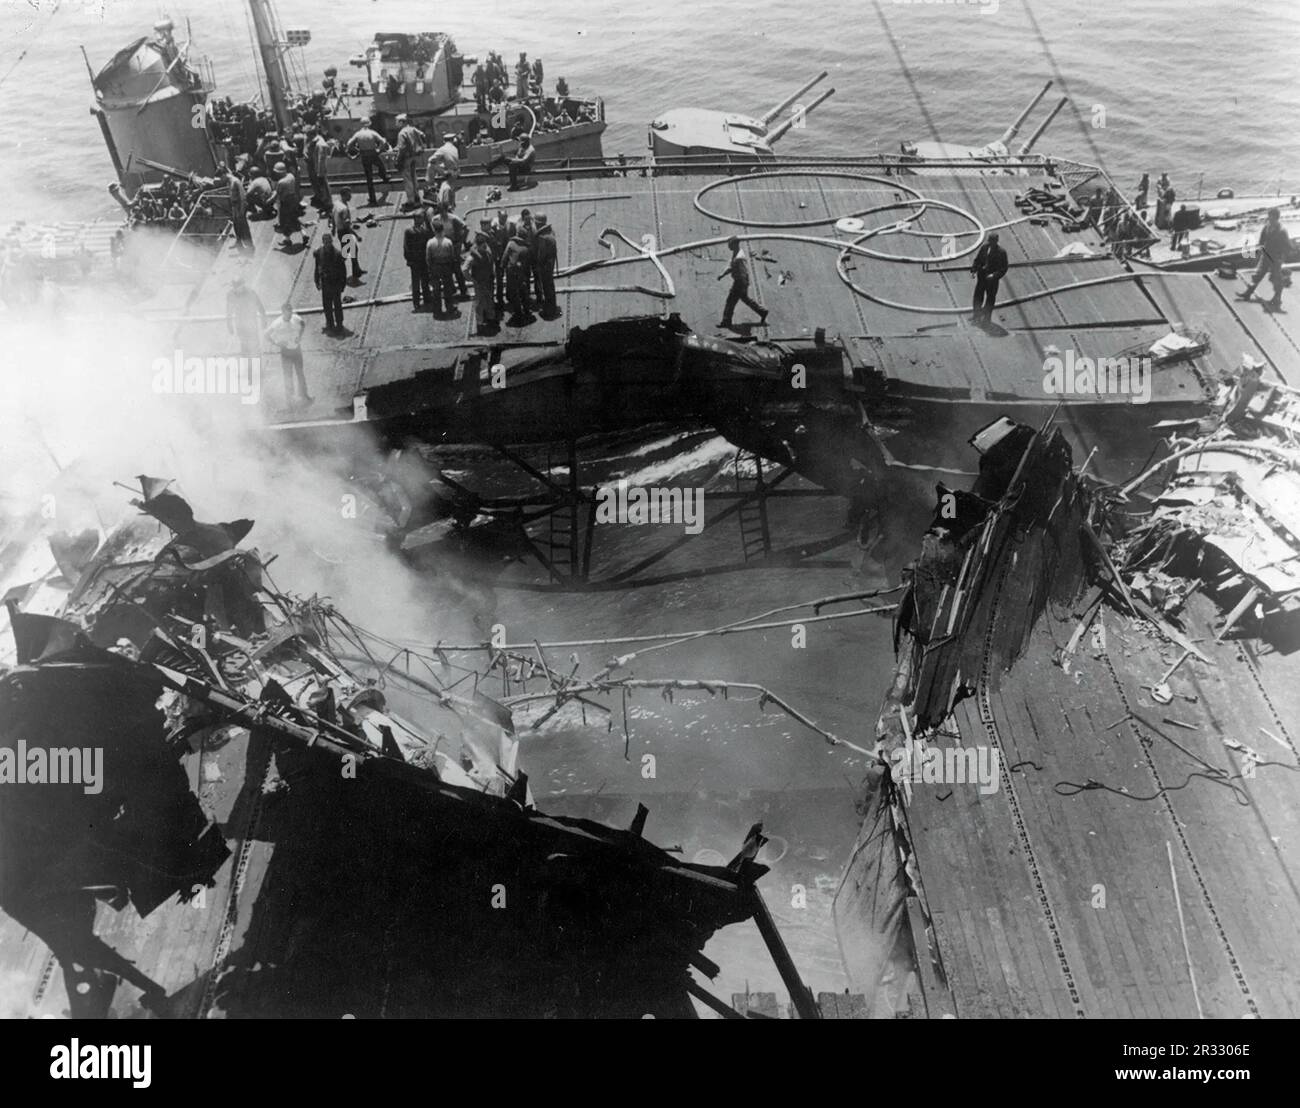 Blick auf die Schäden am Deck des USS Bunker Hill nach einem Angriff von zwei japanischen Kamikaze-Piloten, Juni 1945. Als Japan Ende 1944 mit einer Niederlage konfrontiert war, entschied es sich, US-Schiffe mit Selbstmordattentaten, bekannt als Kamikaze, zu zerstören. Diese Angriffe waren eine starke physische und psychologische Waffe und versenkten insgesamt 47 Schiffe zu einem Preis von mehr als 3000 Piloten und Flugzeugen. Ende 1944 war die US-Marine so groß, dass die Verluste unbedeutend waren und den Verlauf des Krieges nicht veränderten. Stockfoto